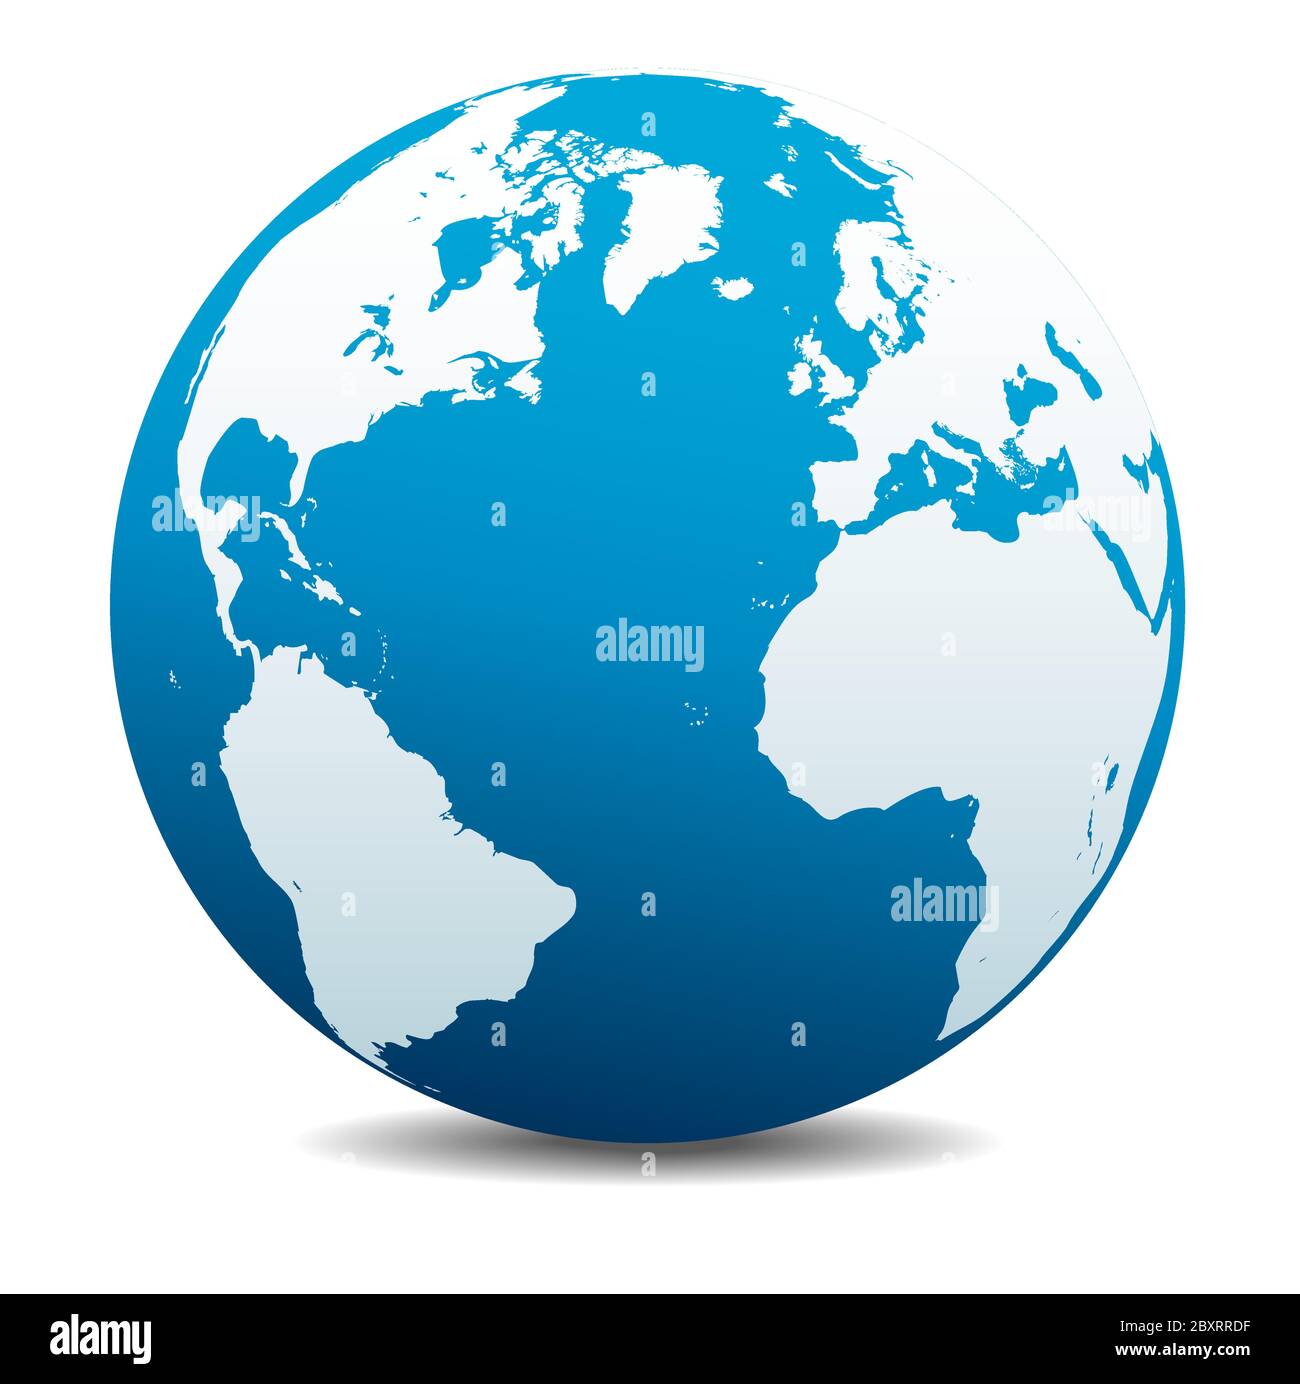 Europa, Nord-, Süd- Und Südamerika, Afrika. Vektorkarte Symbol des Globus, Erde. Alle Elemente befinden sich auf einzelnen Ebenen in der Vektordatei. Stock Vektor